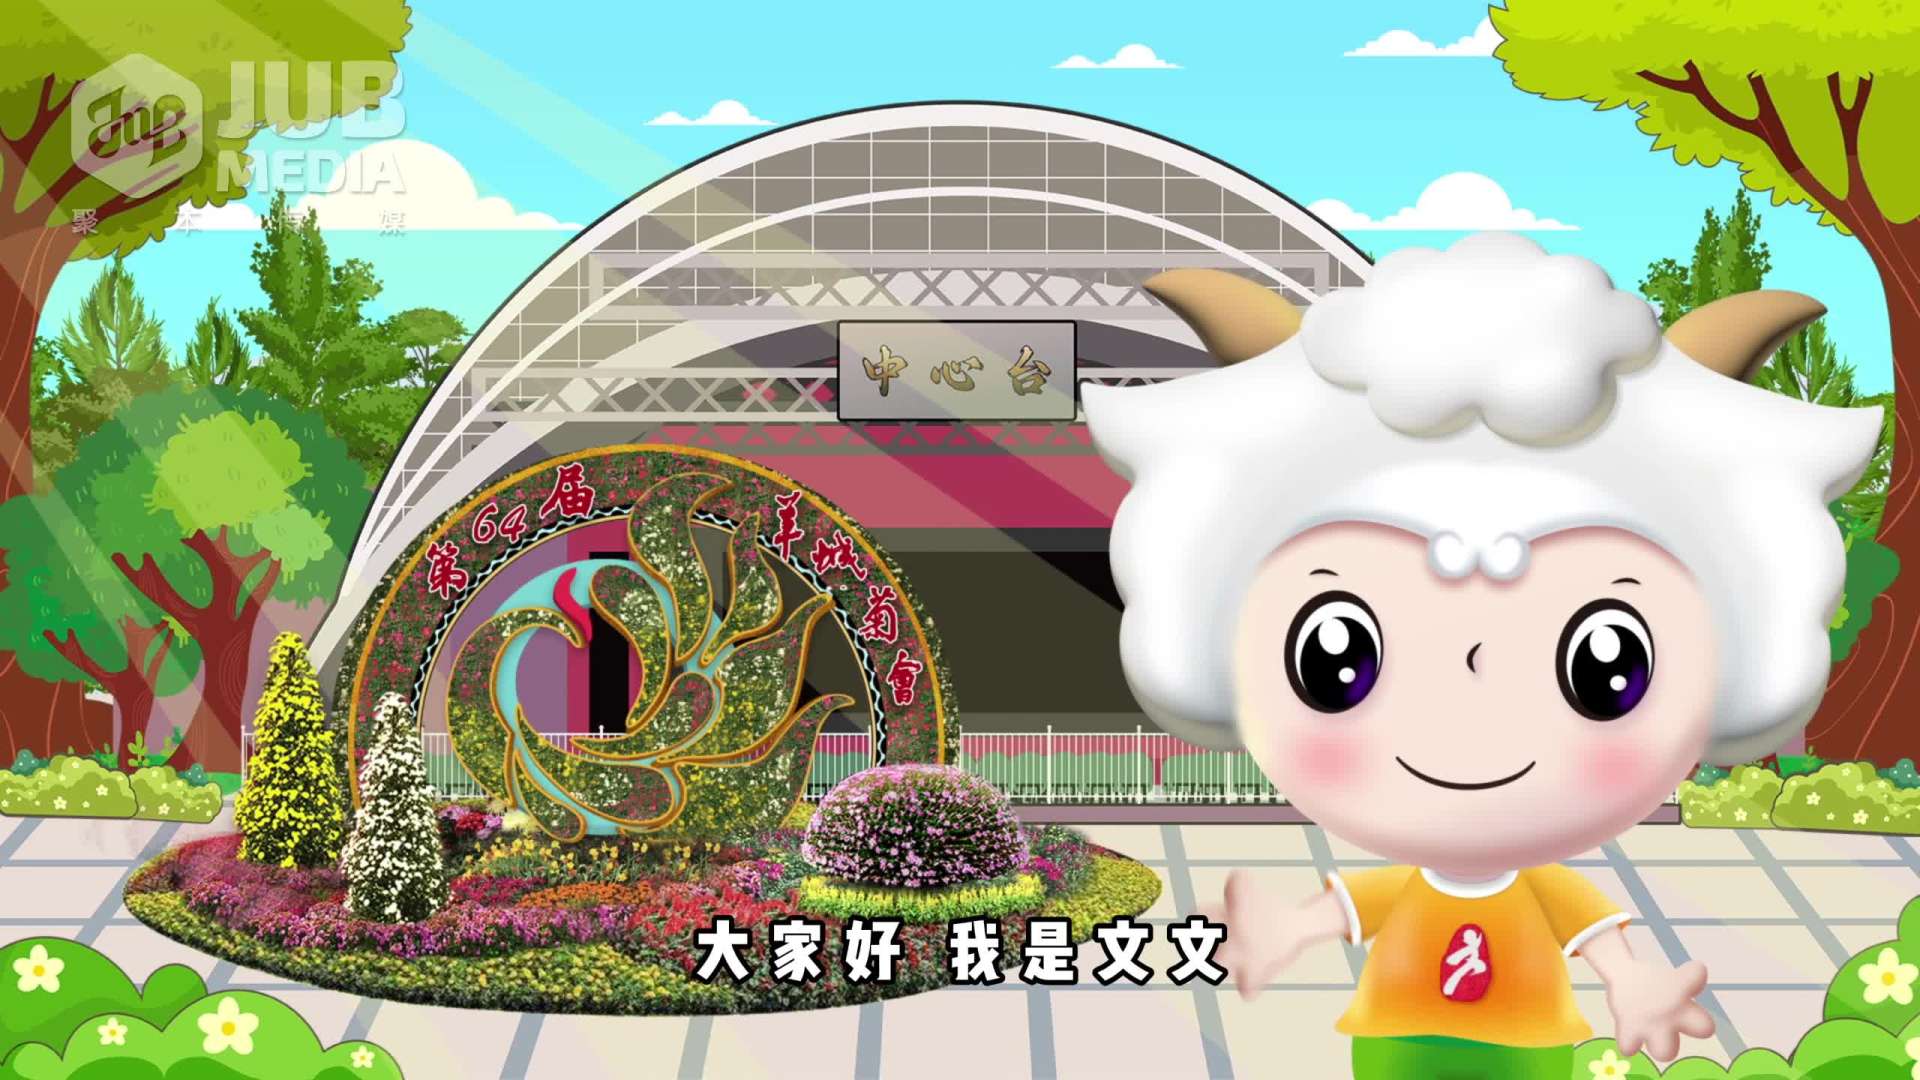 2023年广州文化公园羊城菊会活动回顾